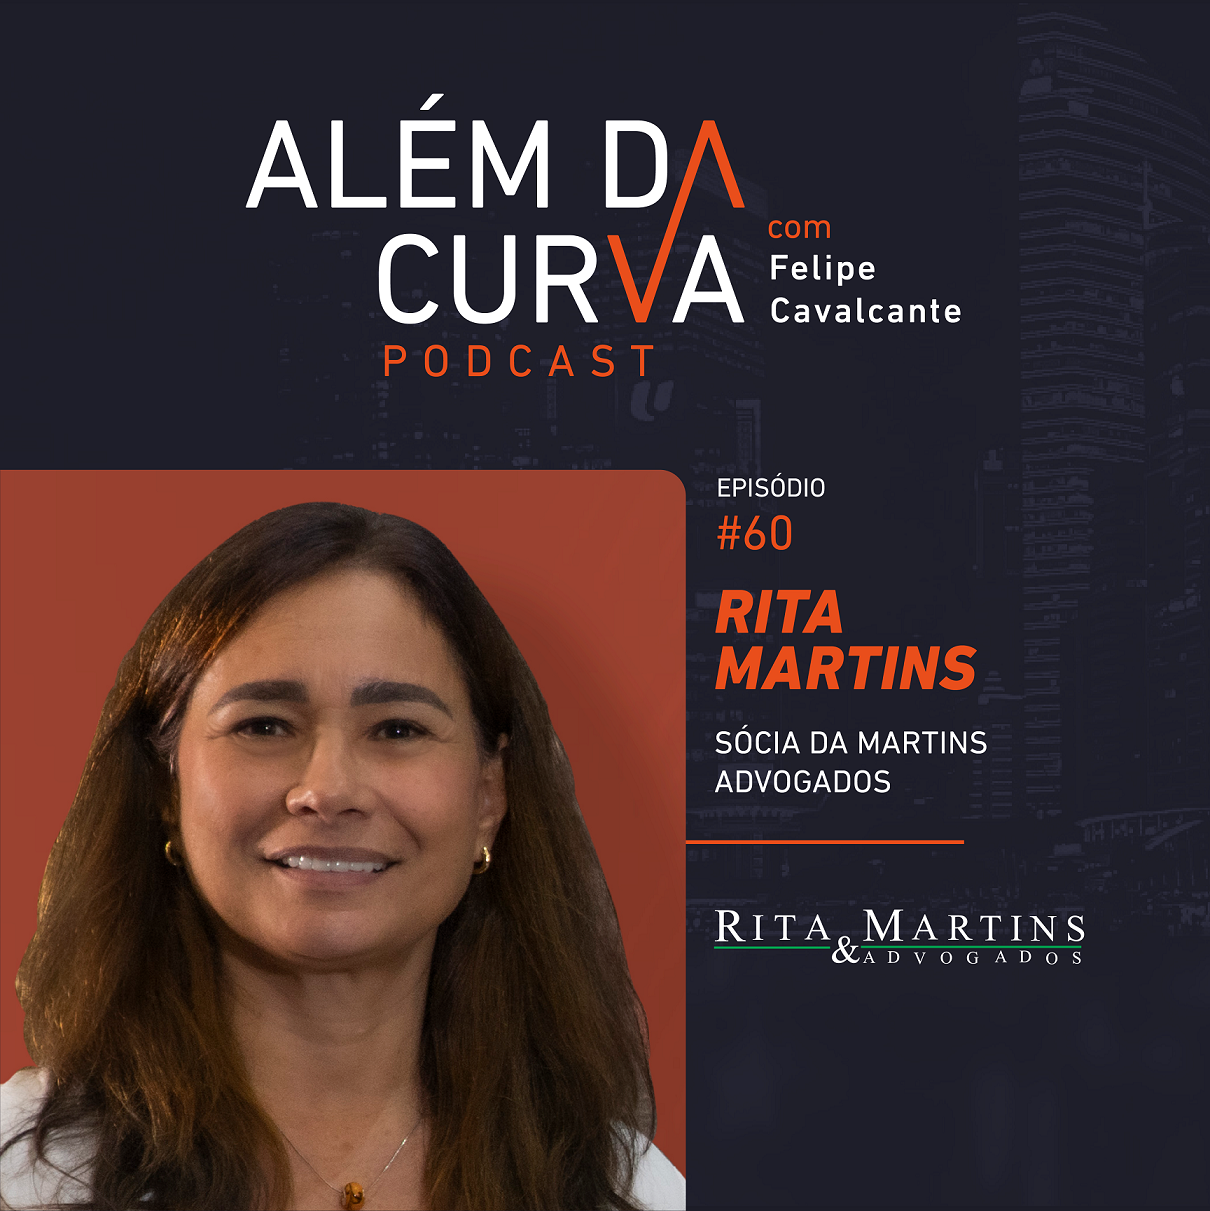 Rita Martins fala sobre sua jornada, a nova lei das incorporações imobiliárias e o Reurb